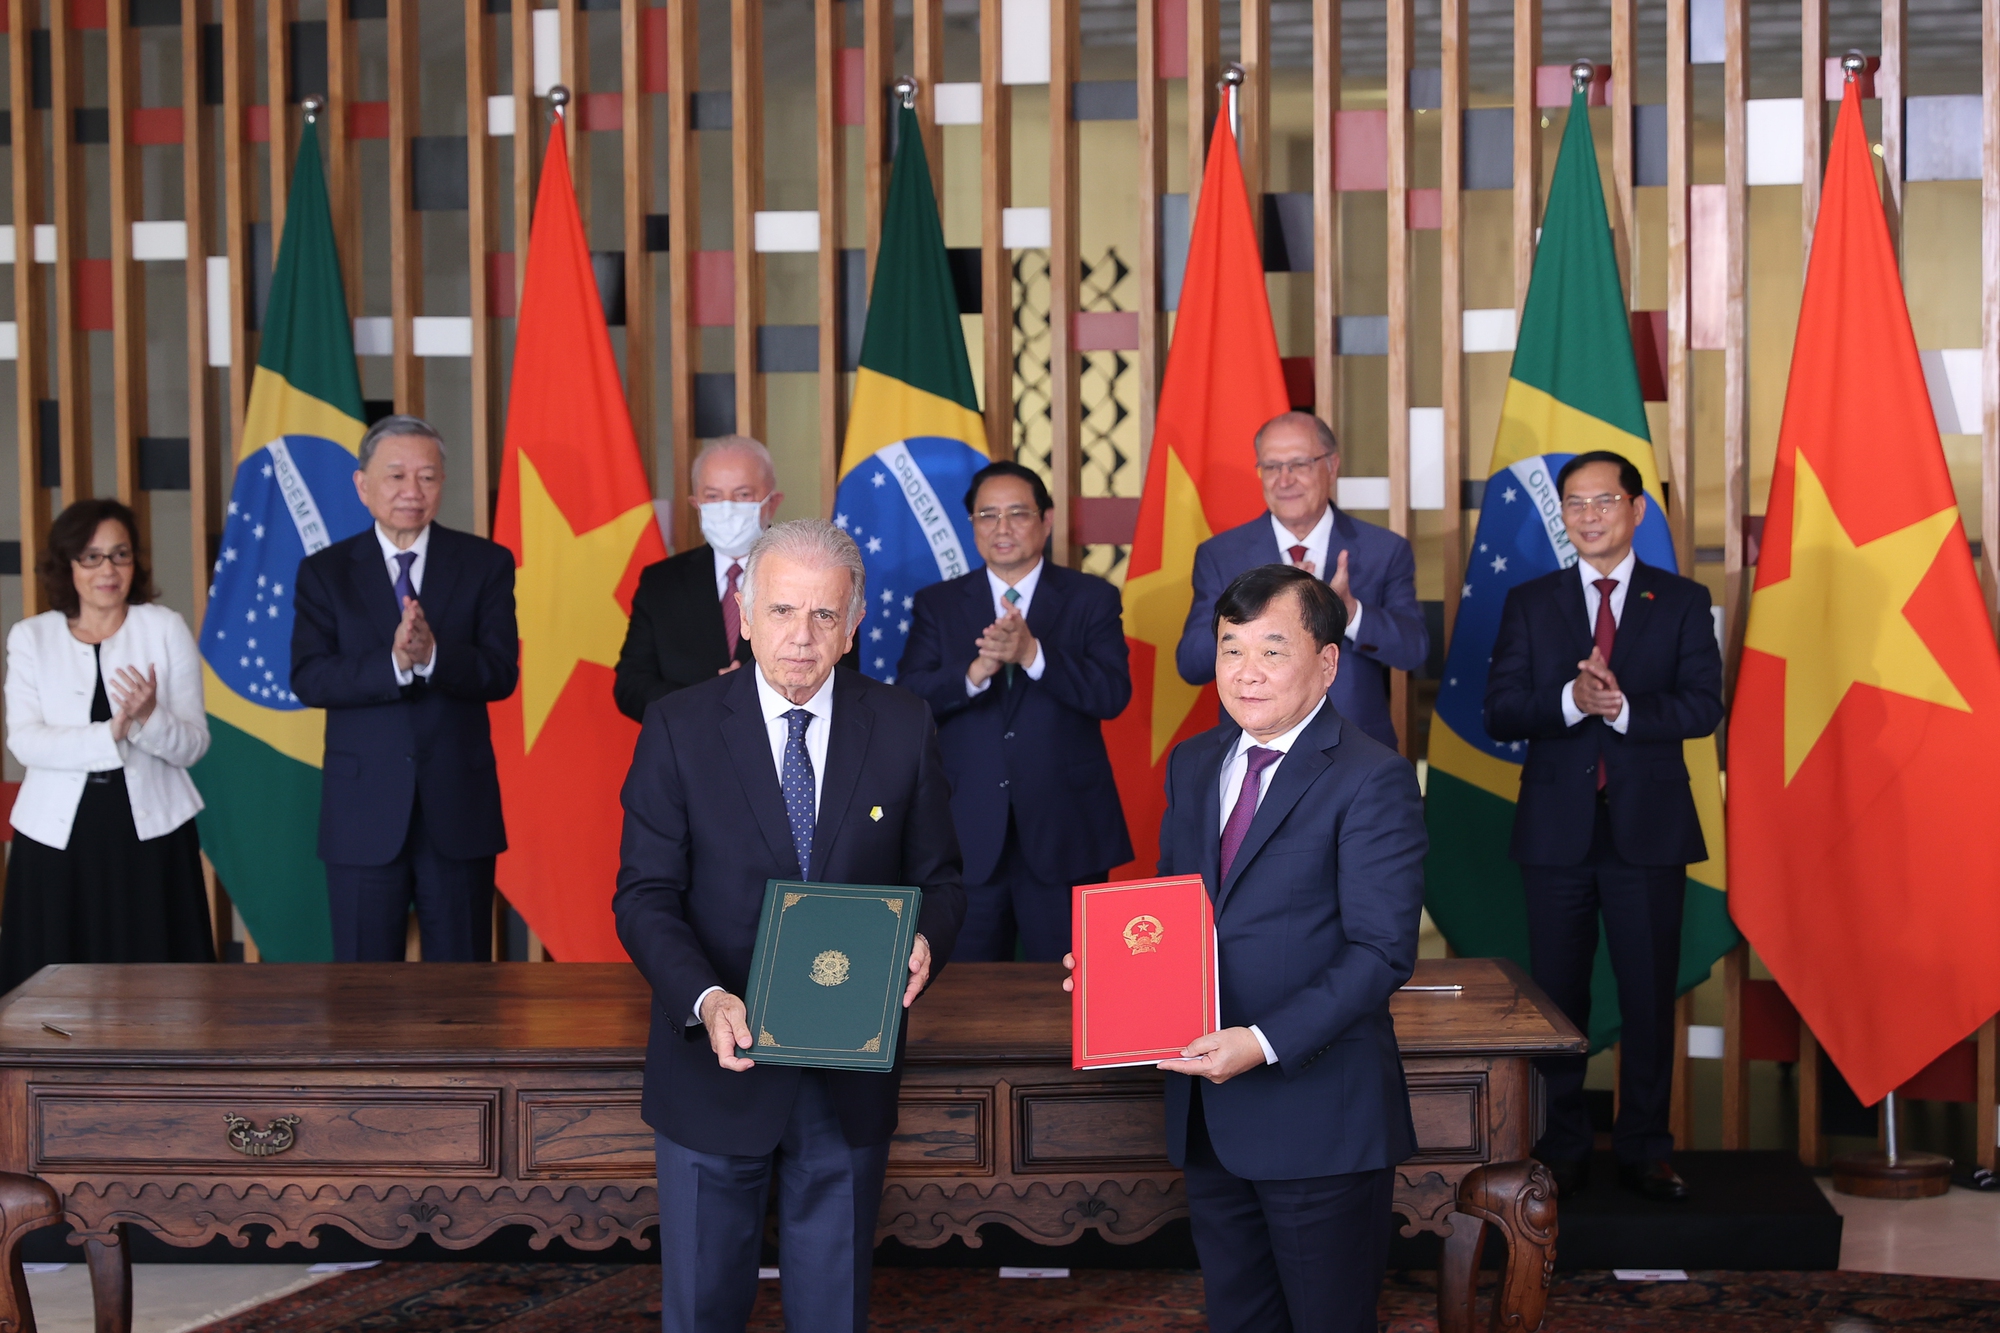 Thủ tướng Phạm Minh Chính và Tổng thống Brazil chứng kiến lễ ký văn bản hợp tác giữa hai nước trong các lĩnh vực giáo dục, quốc phòng, nông nghiệp, ngoại giao - Ảnh: VGP/Nhật Bắc